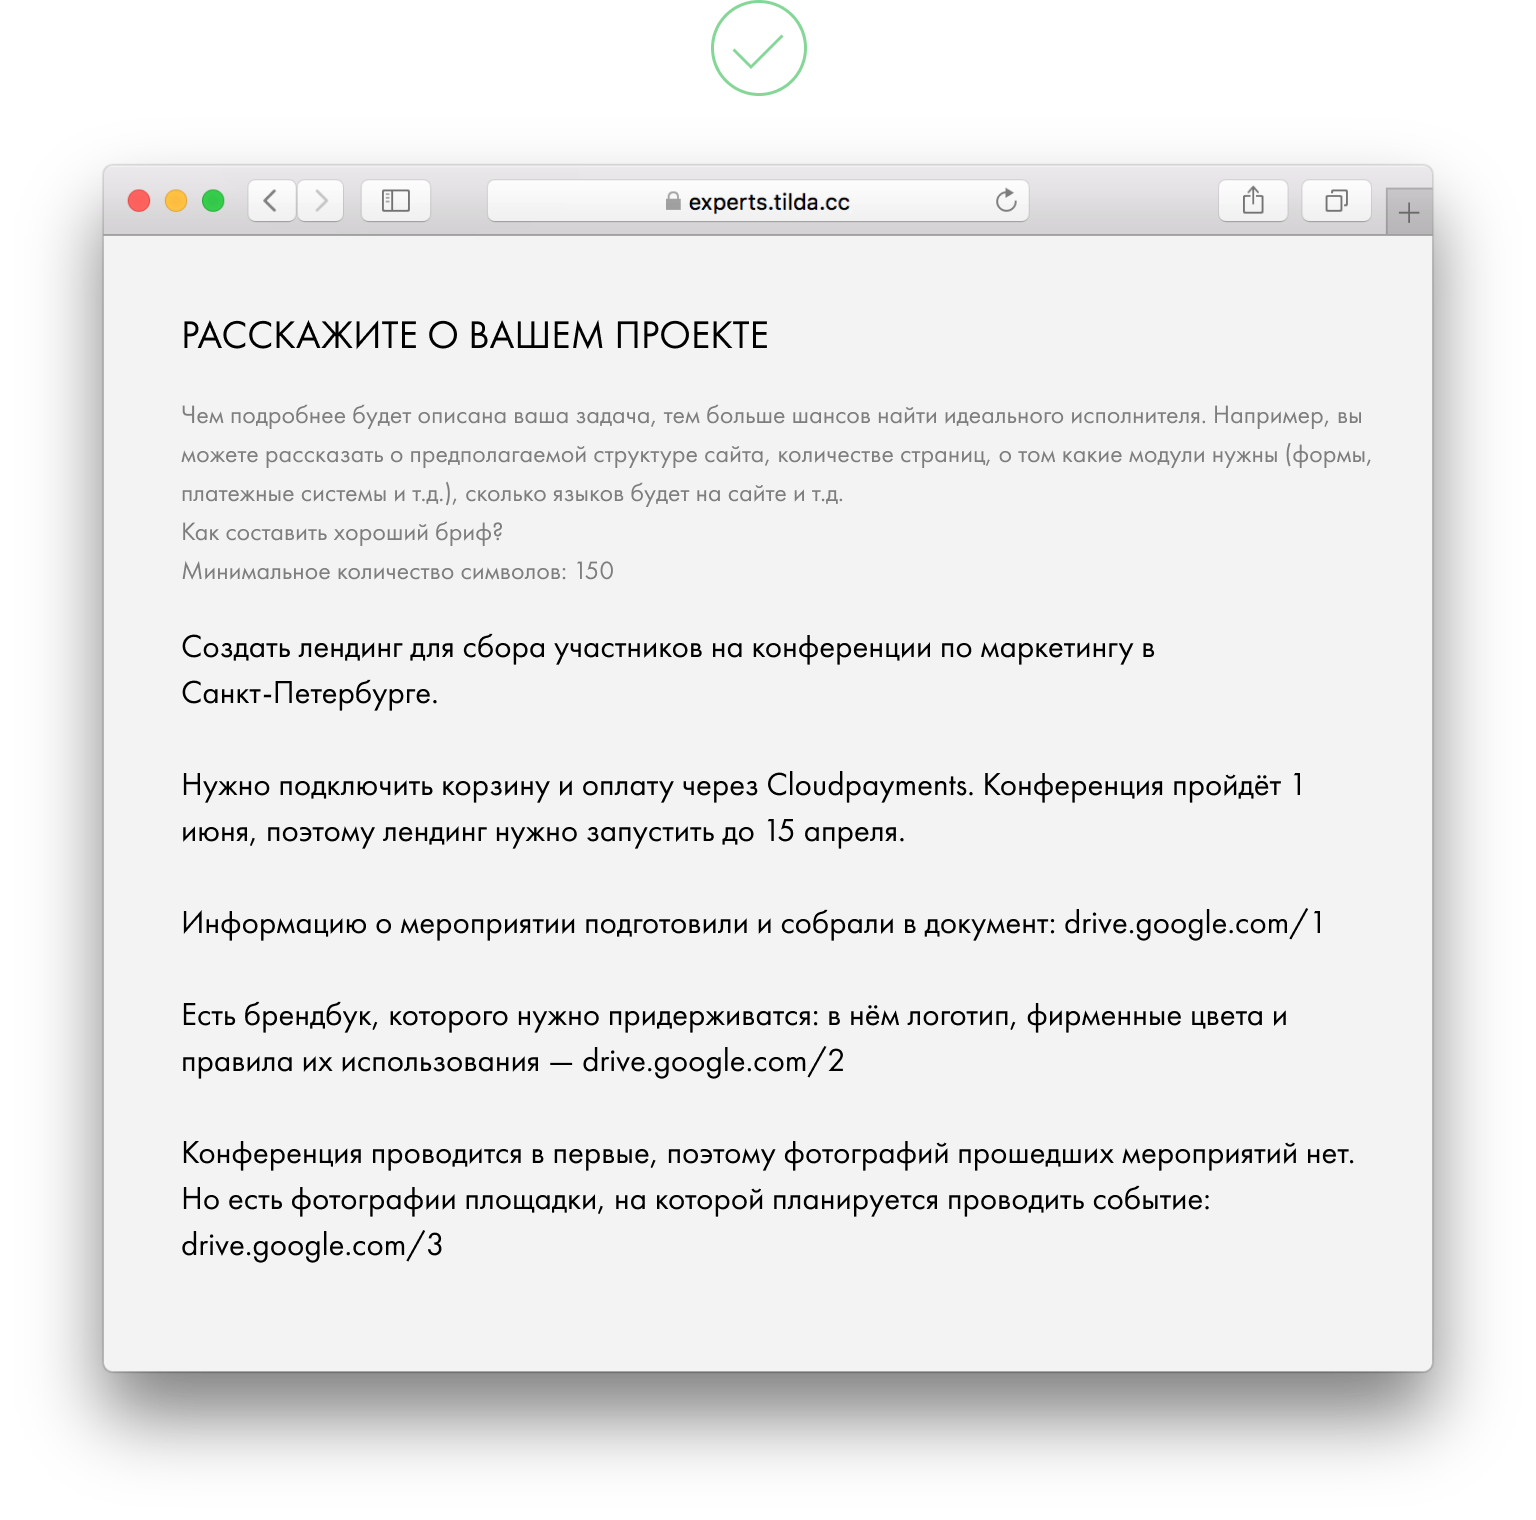 Бриф для веб-дизайна: как написать эффективный документ — Український телекомунікаційний портал